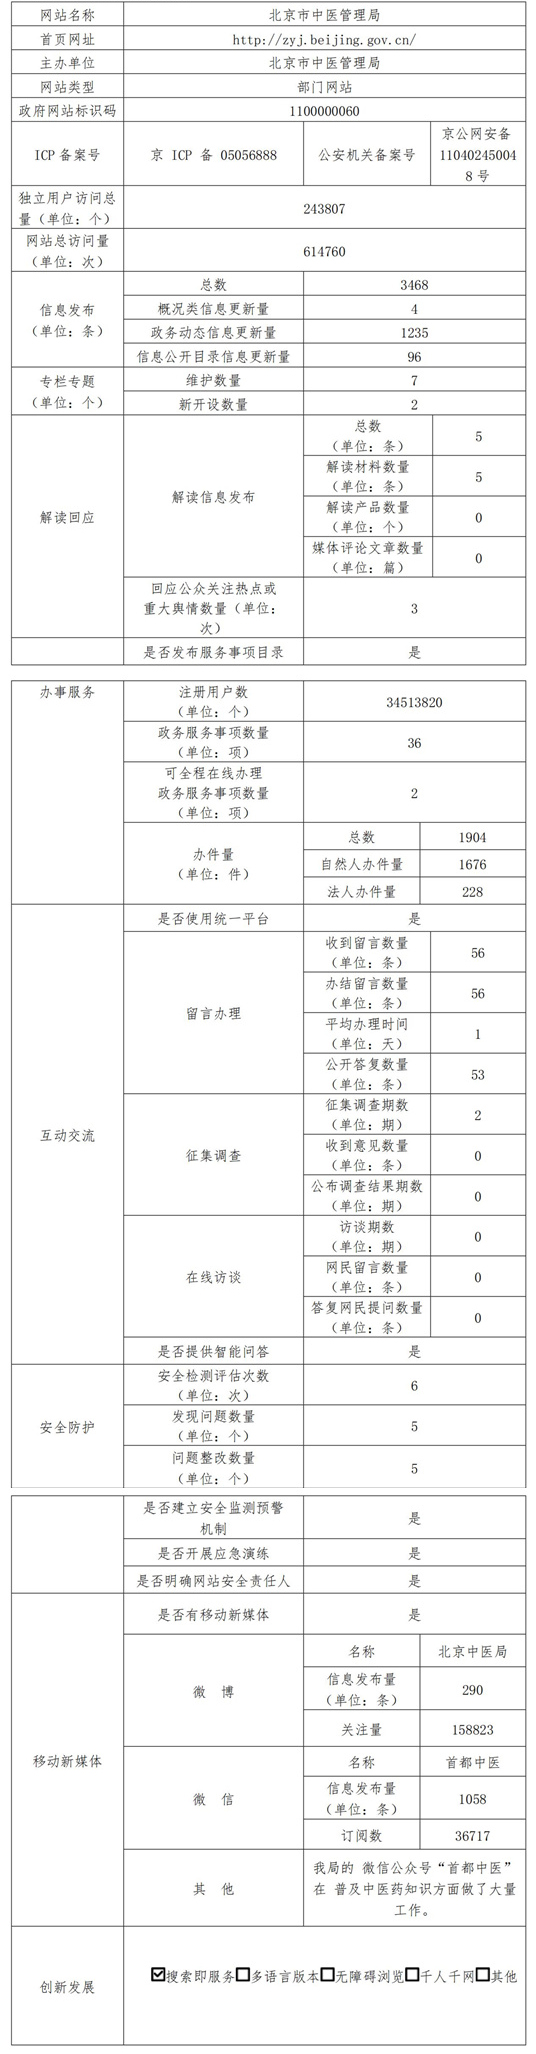 北京市中医管理局2021年政府网站年度工作报表